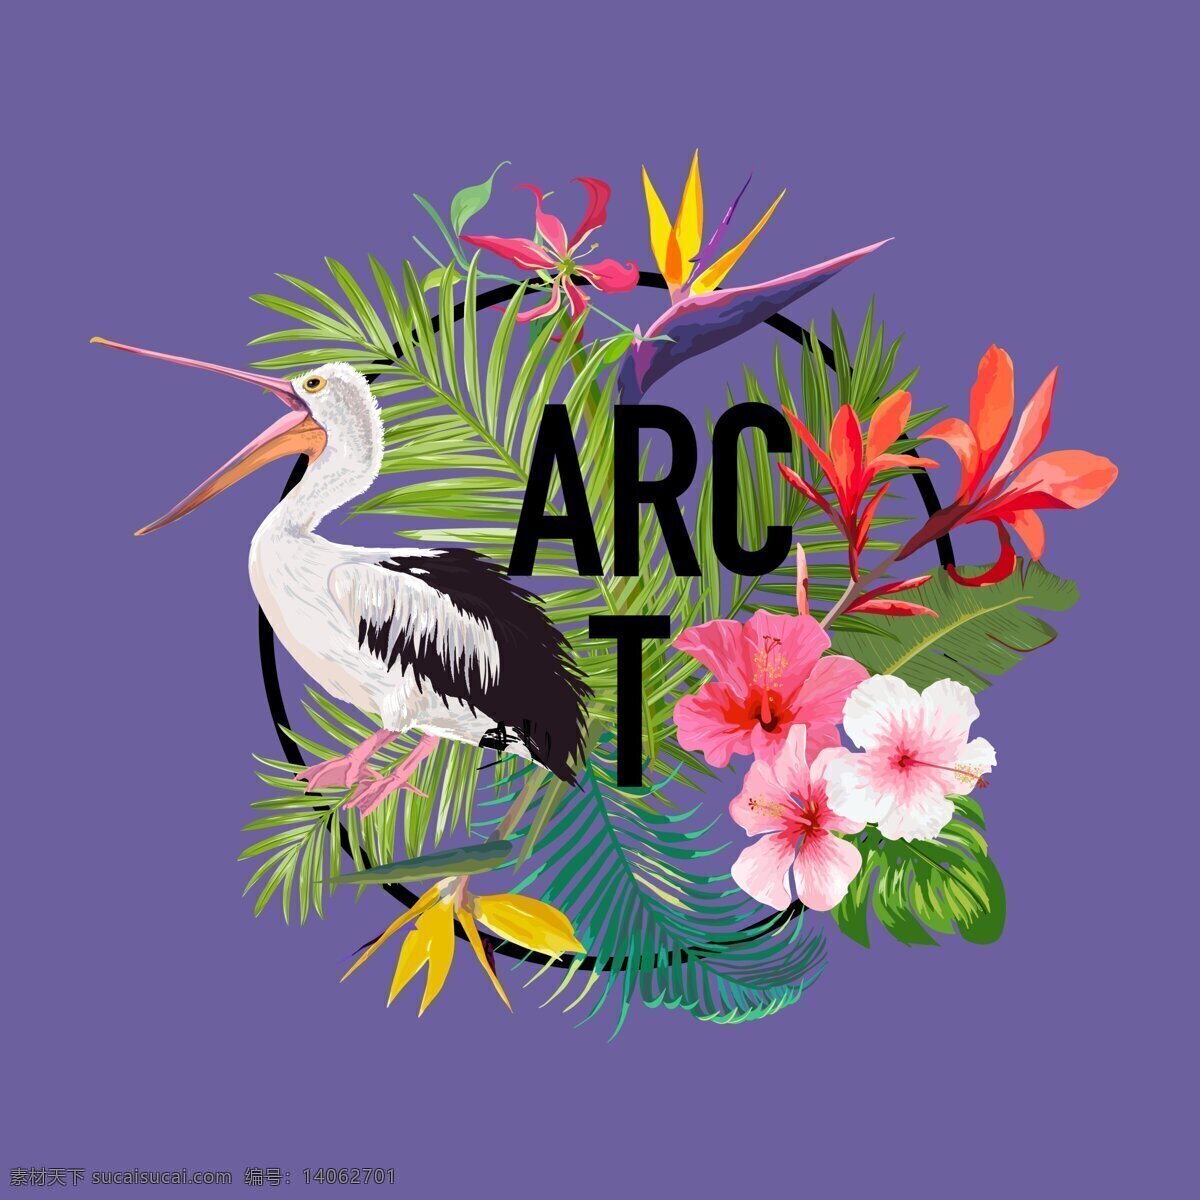 花儿与鸟儿 花朵 鸟 流行紫色 t恤印花 字母印花 生物世界 野生动物